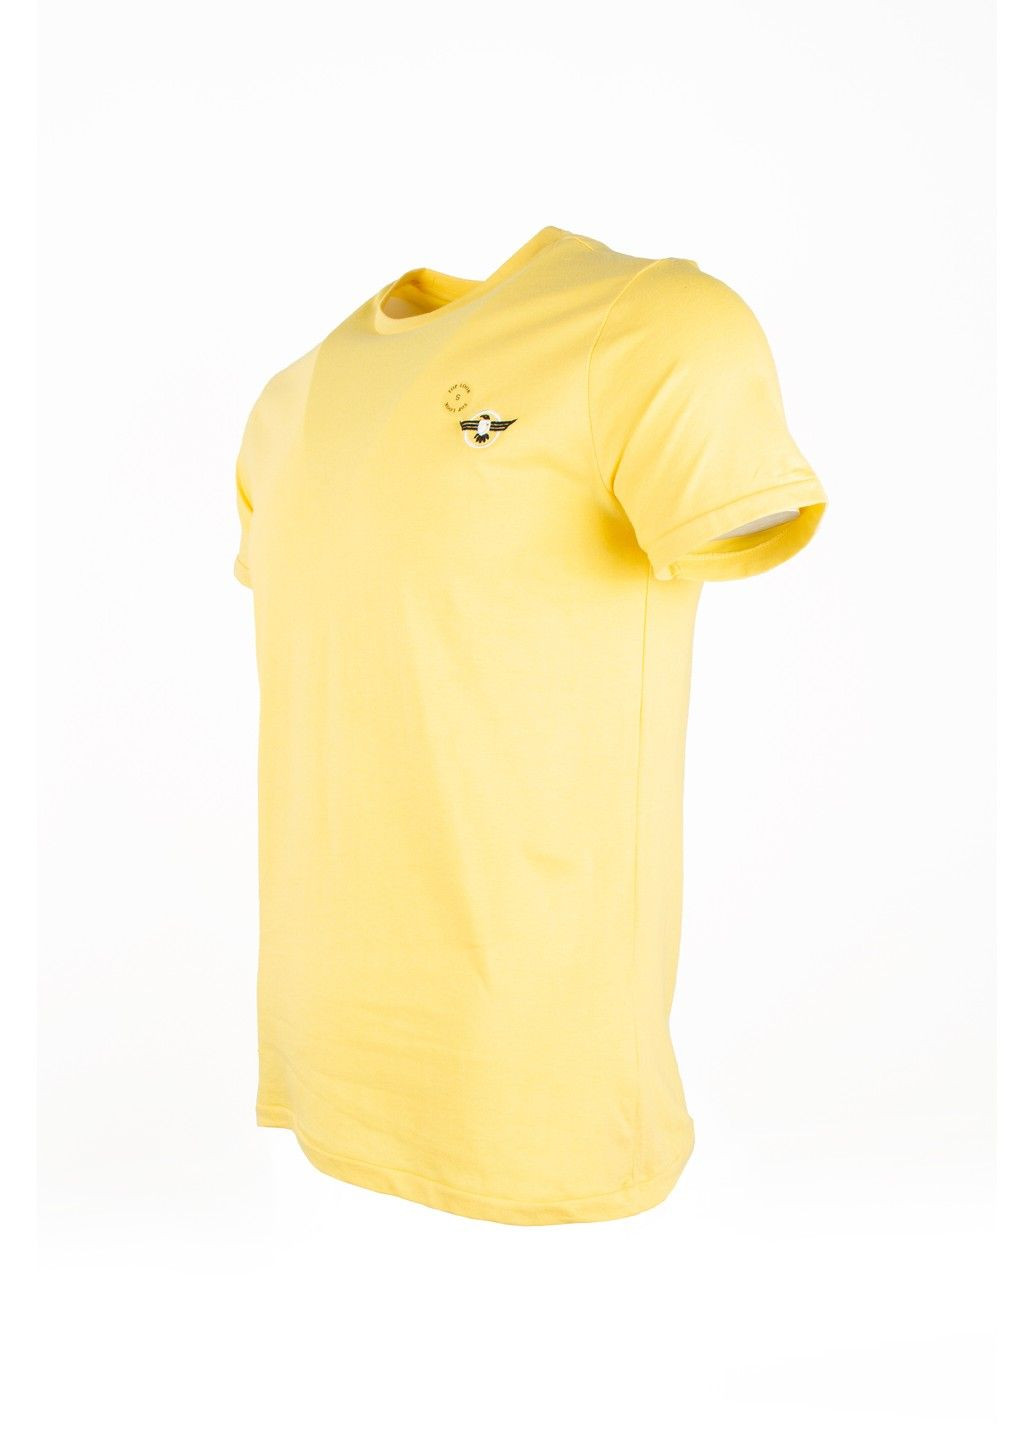 Желтая футболка мужская top look желтая 070821-001487 No Brand